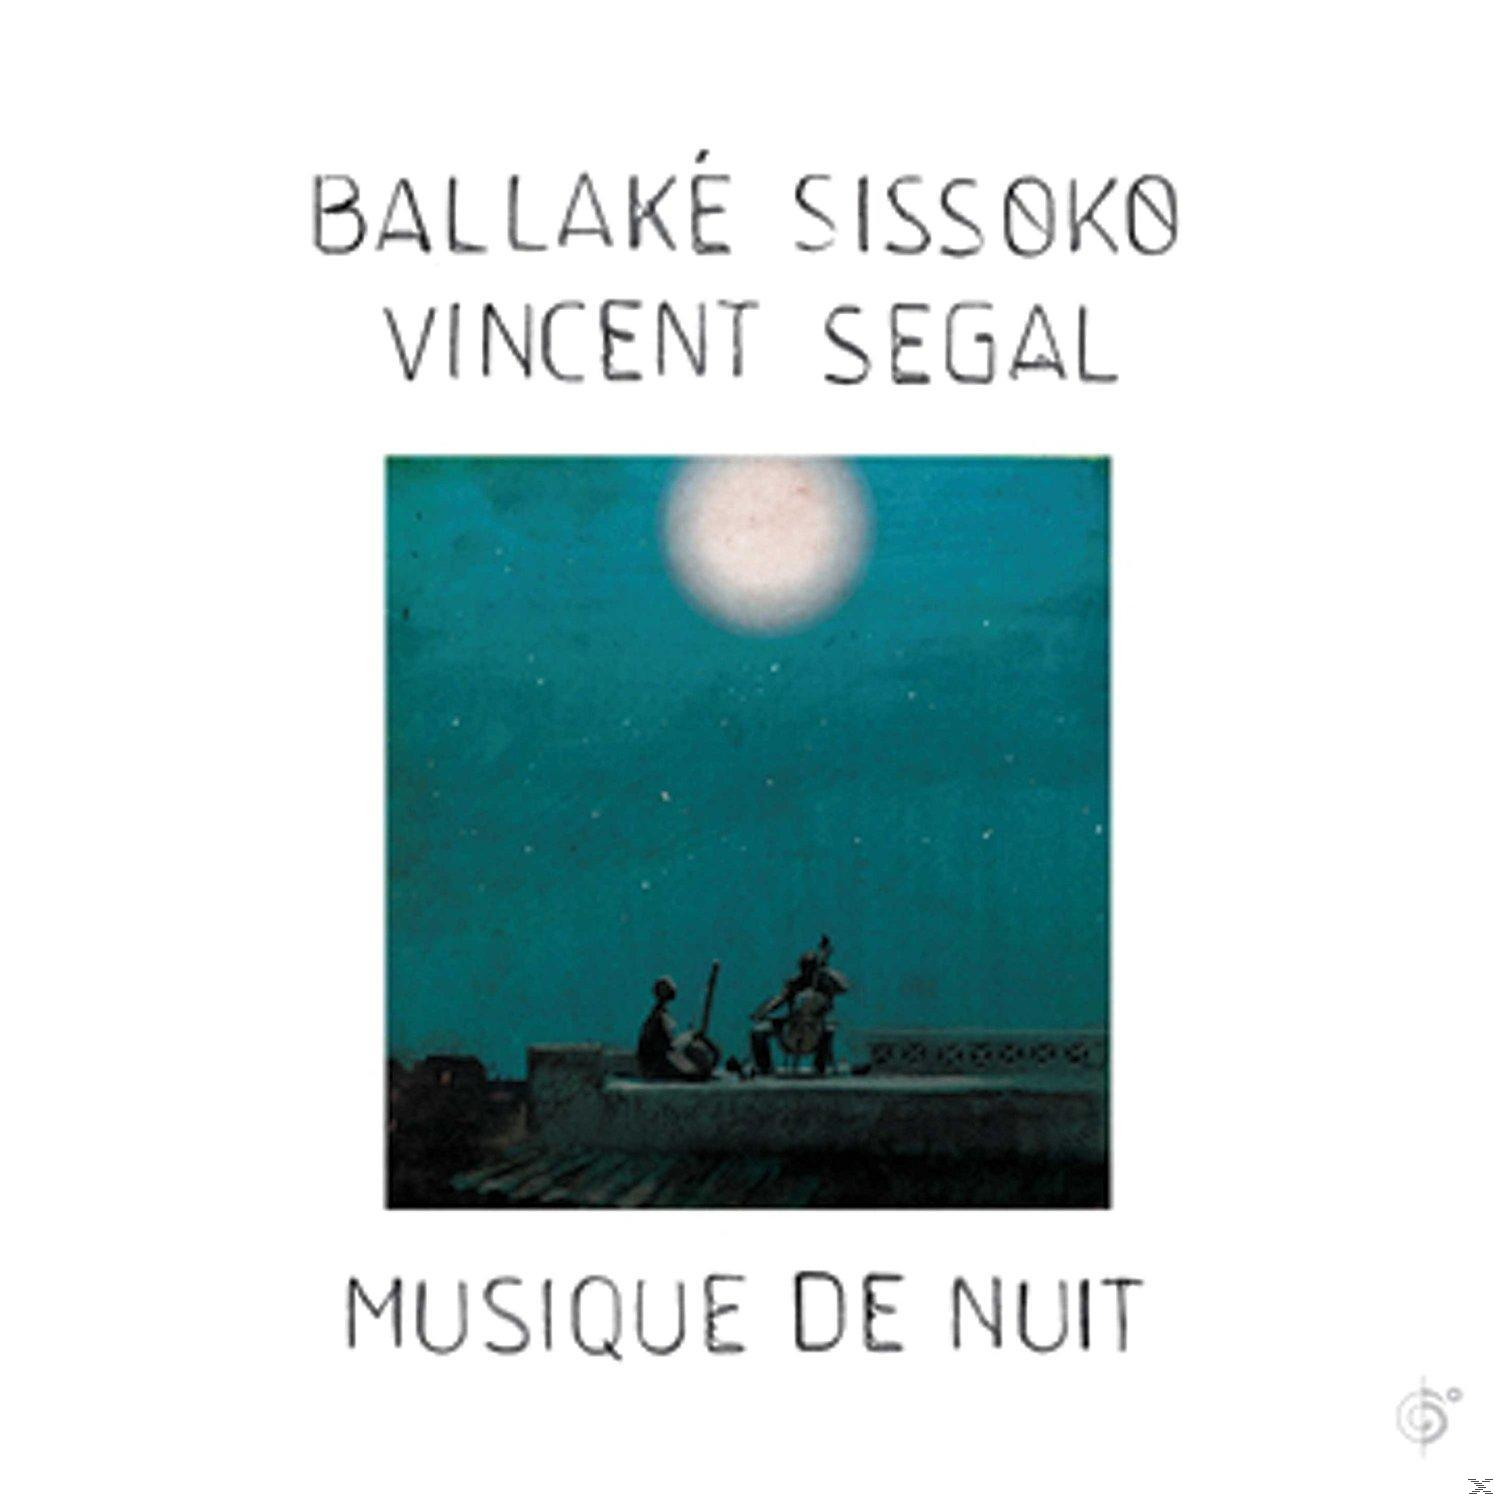 Ballake Sissoko, Vincent Segal - + Nuit Musique De - (LP Download)